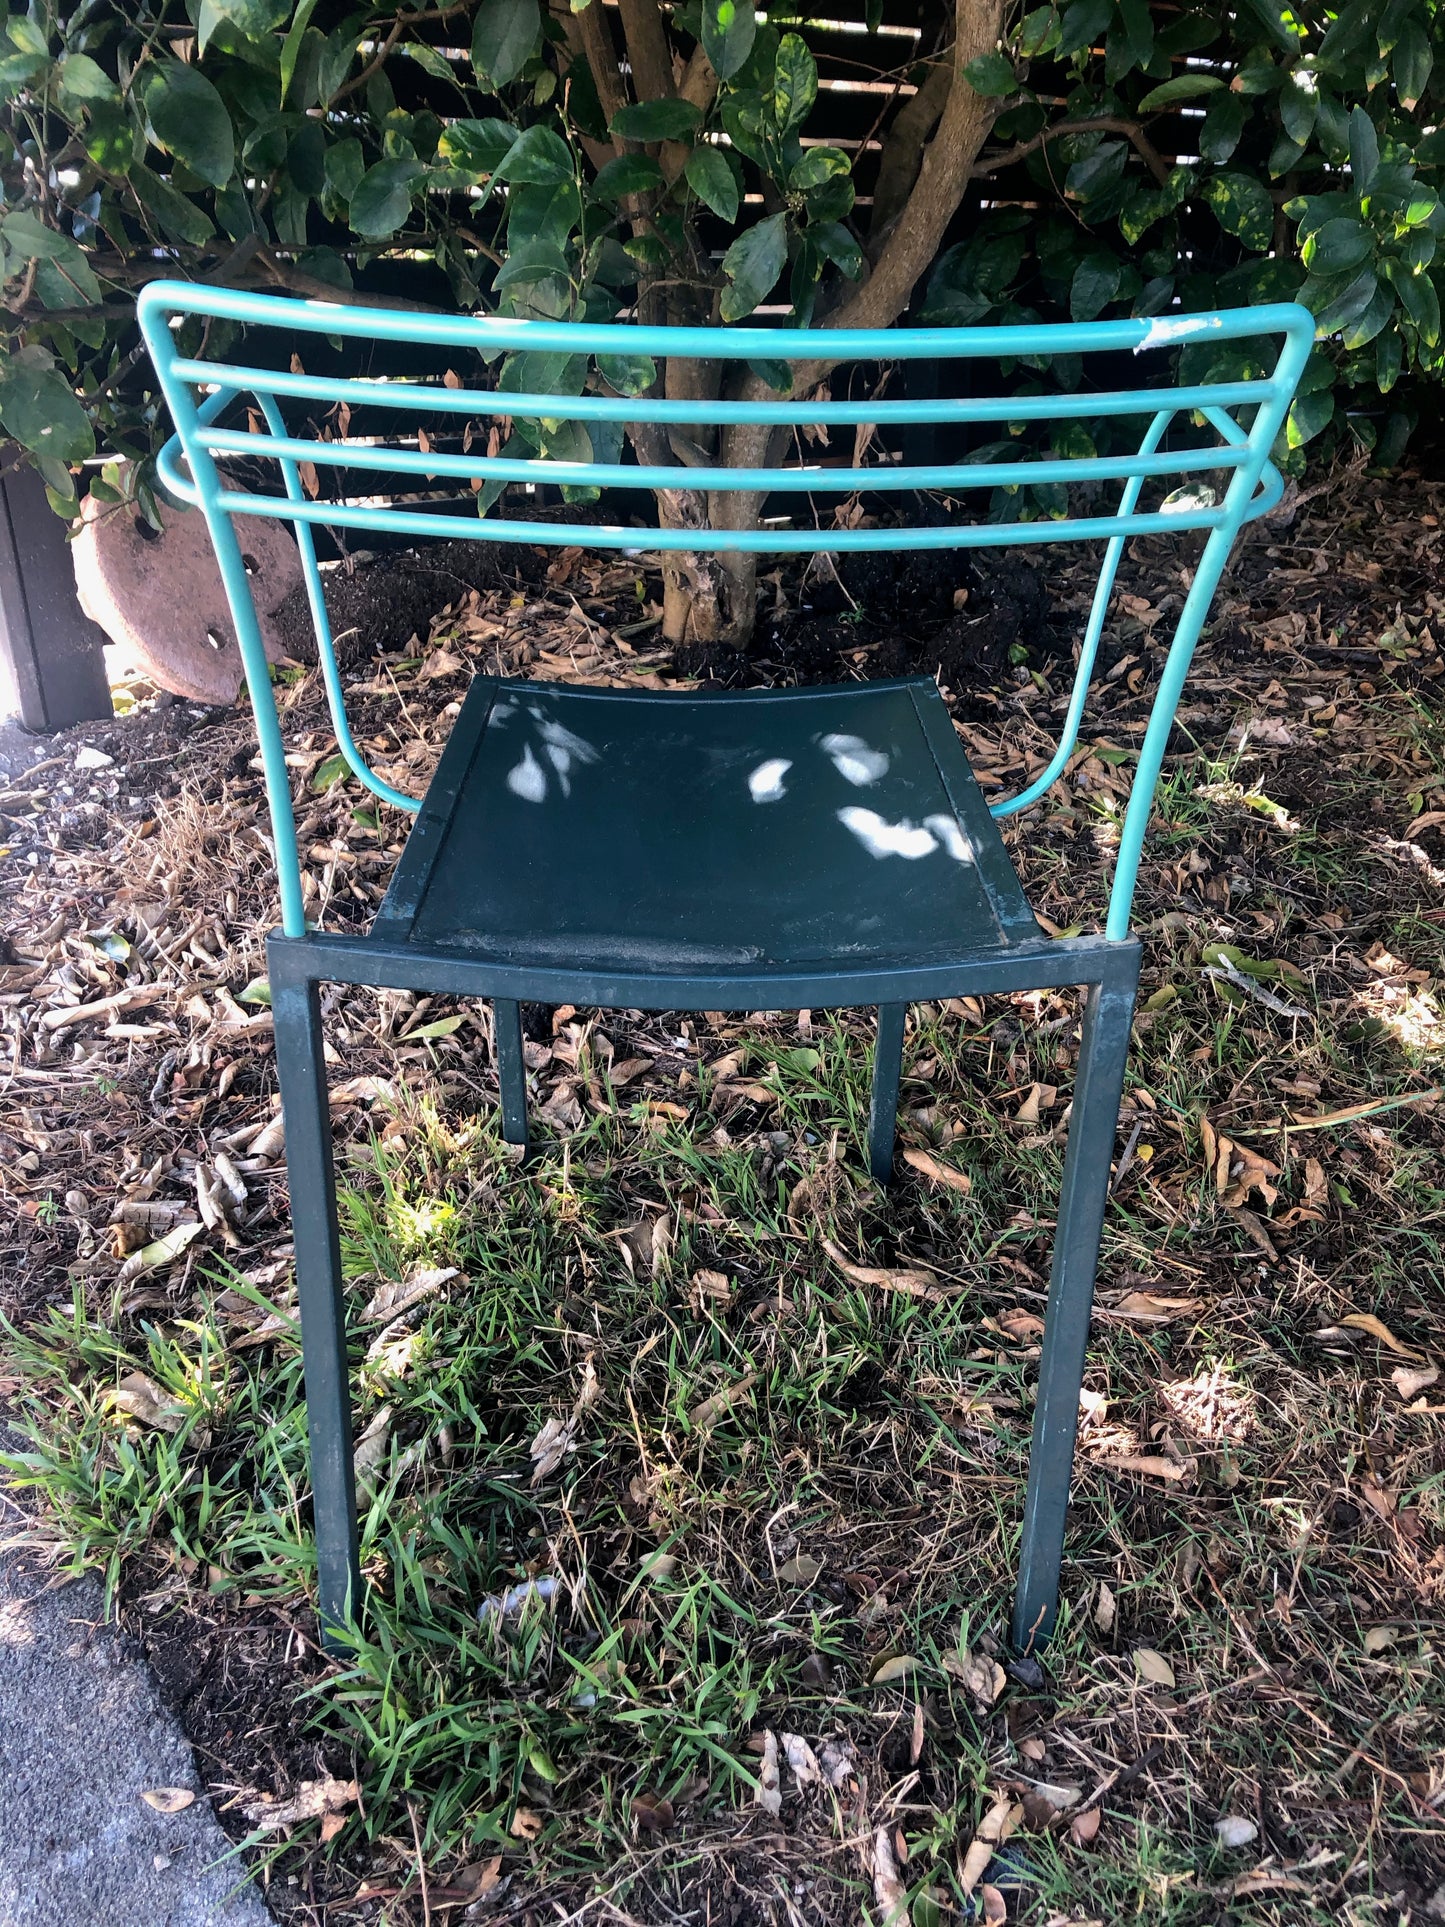 Vintage Metal Chairs